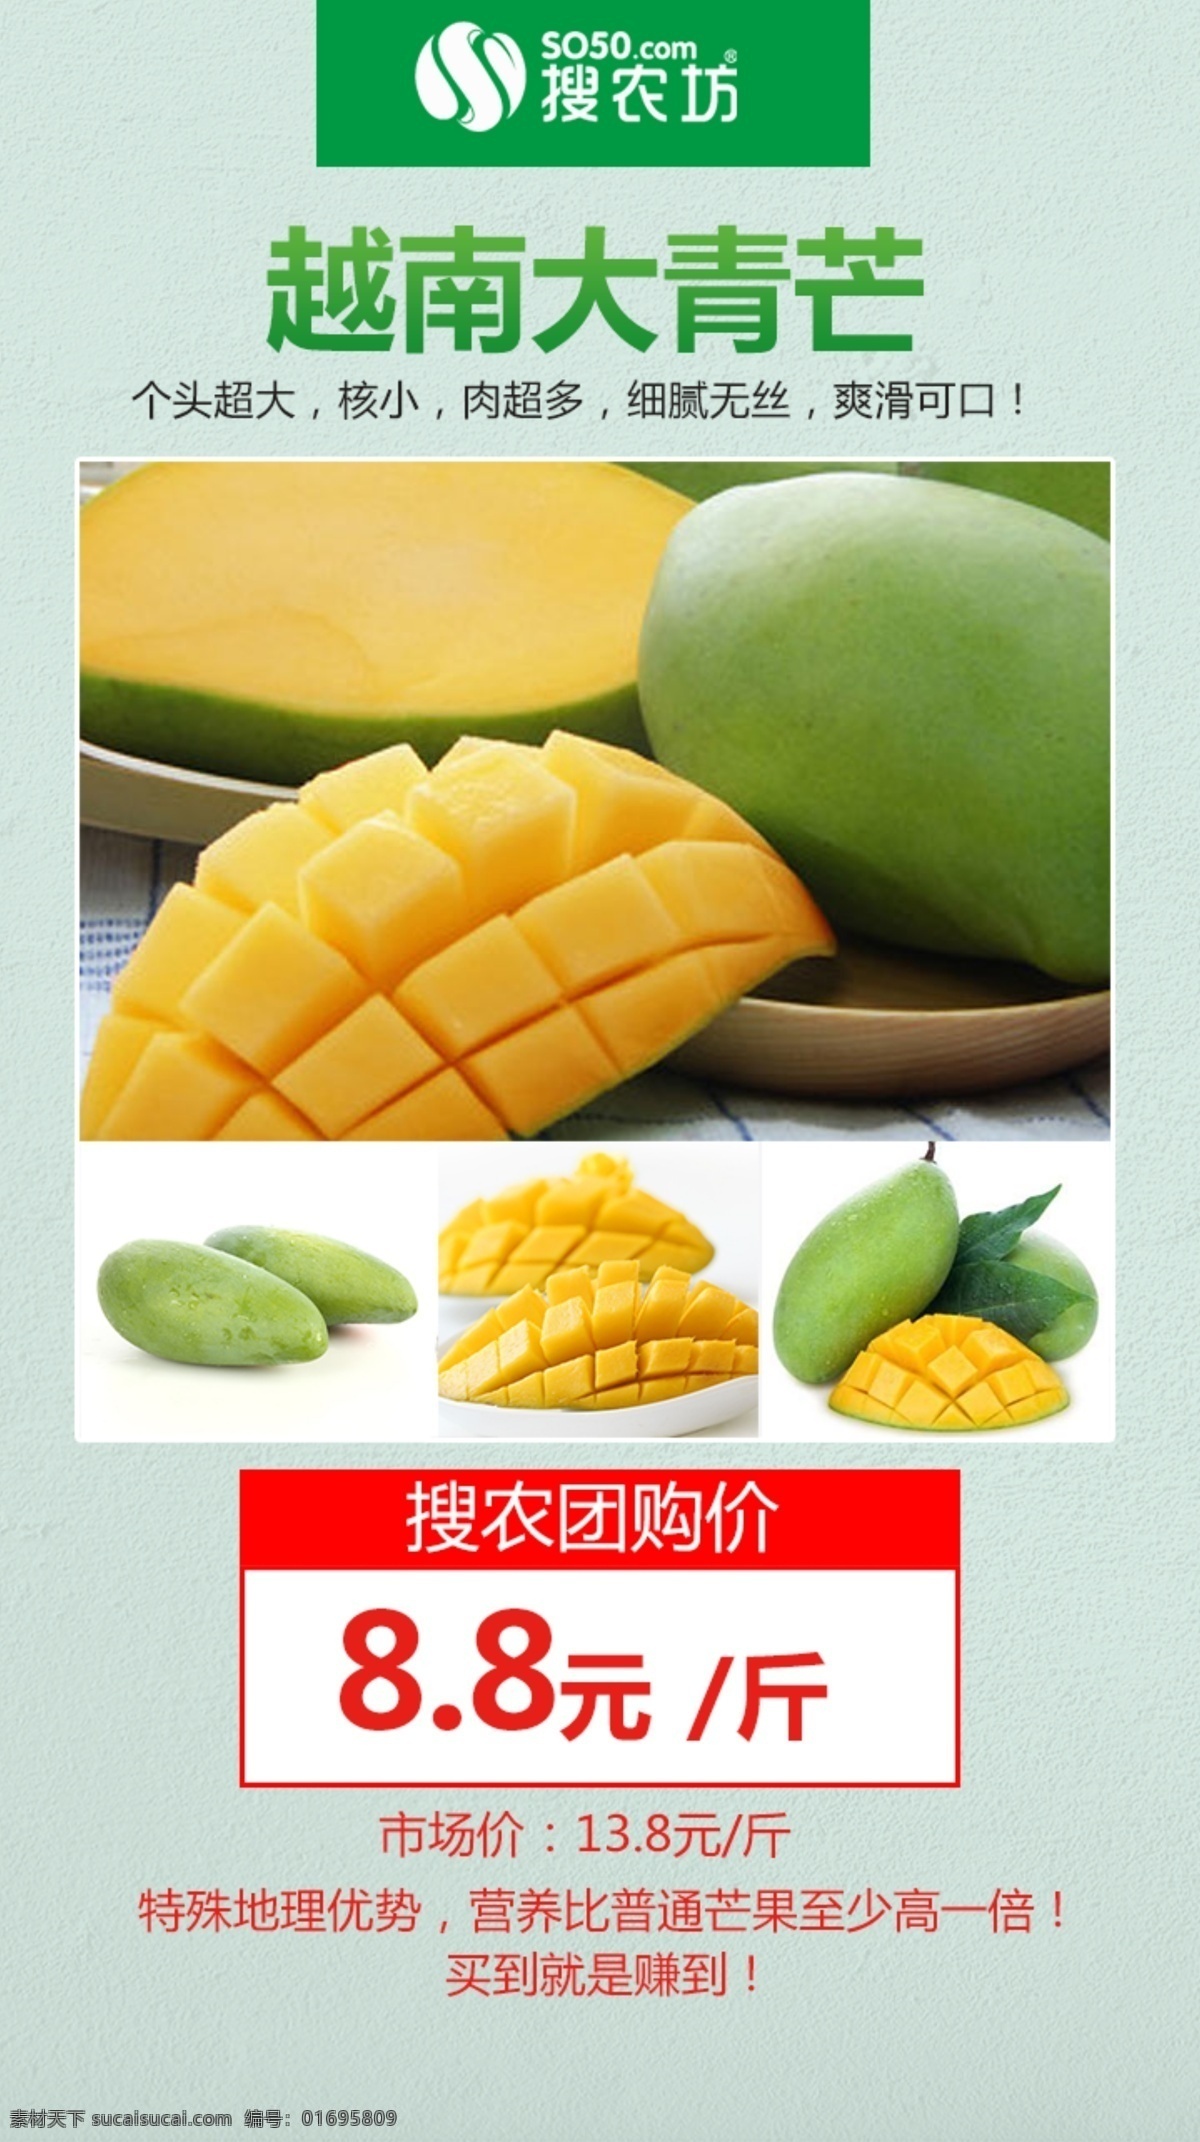 越南大青芒 农产品 宣传海报 微商 电商 群宣传 水果 产品 秒 杀 相关 图